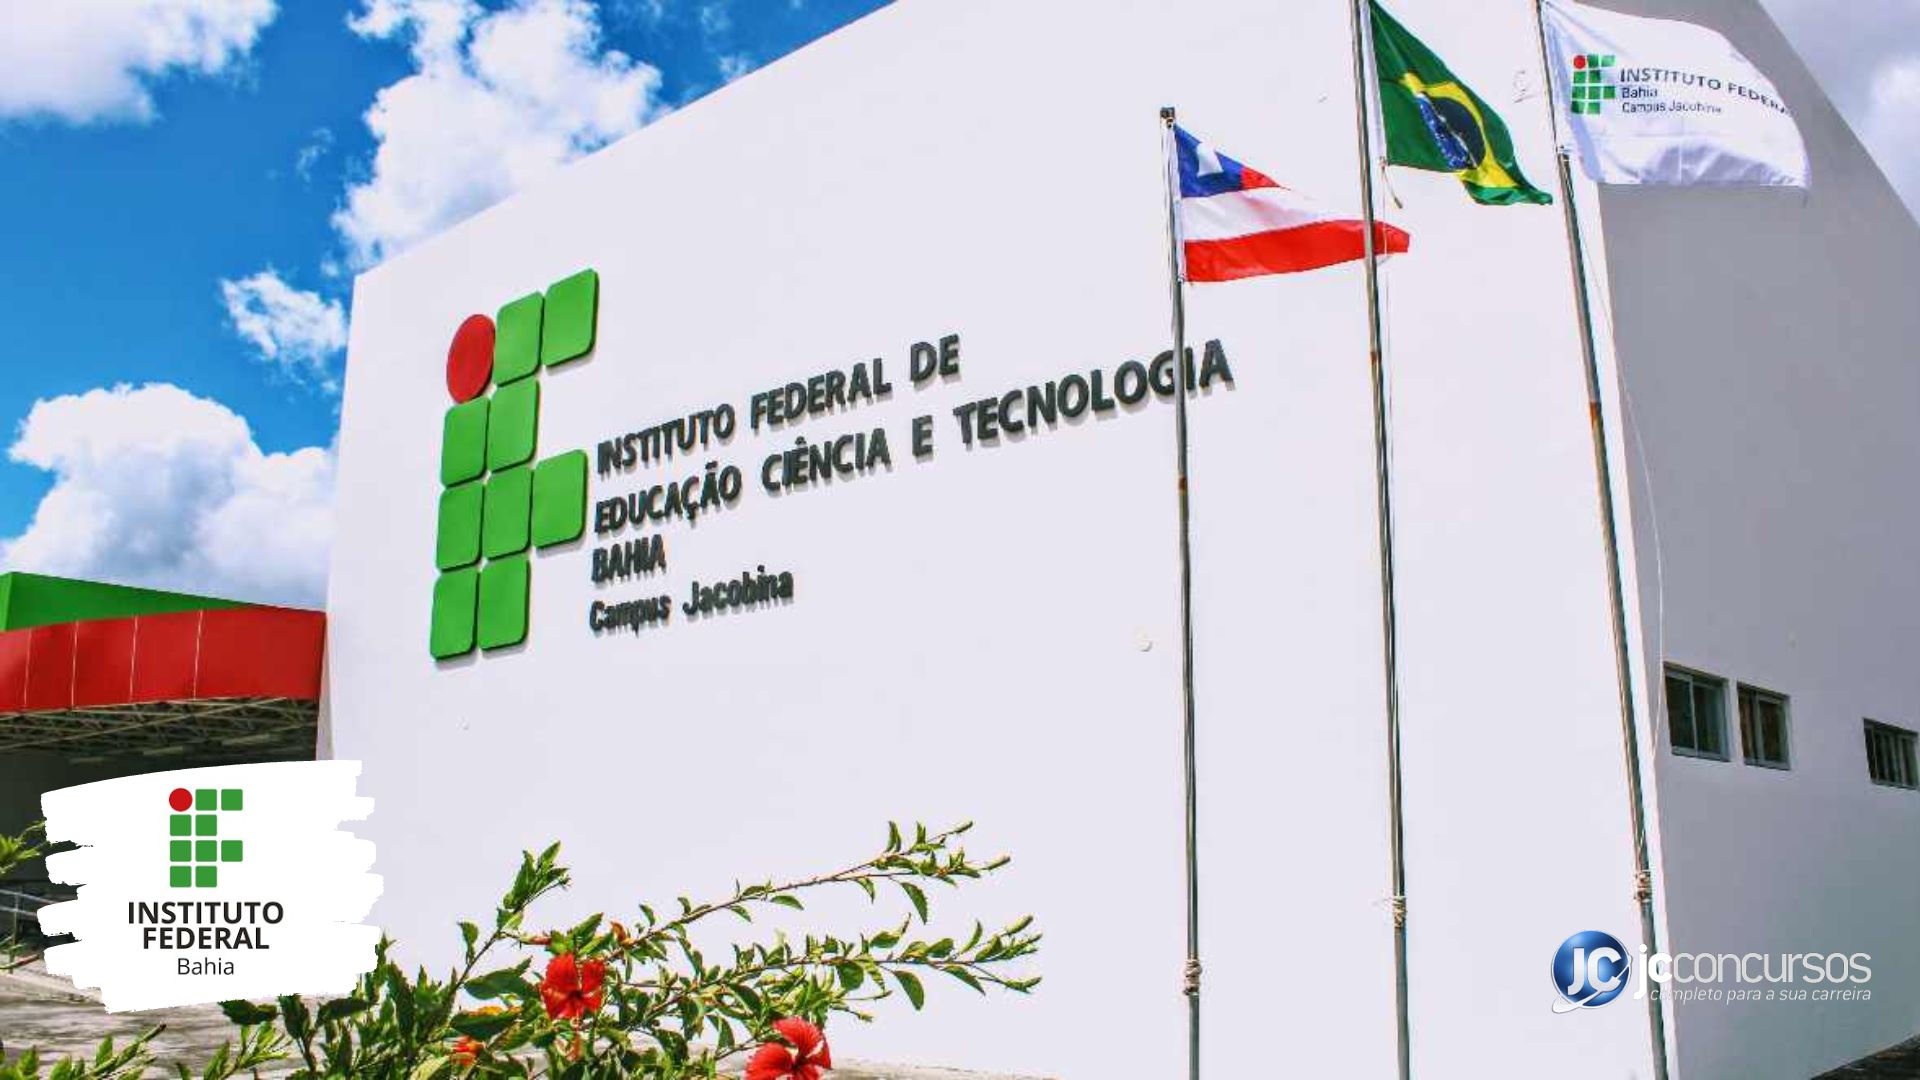 BARREIRAS: Ifba abre inscrições para quase 6 mil vagas em cursos técnicos